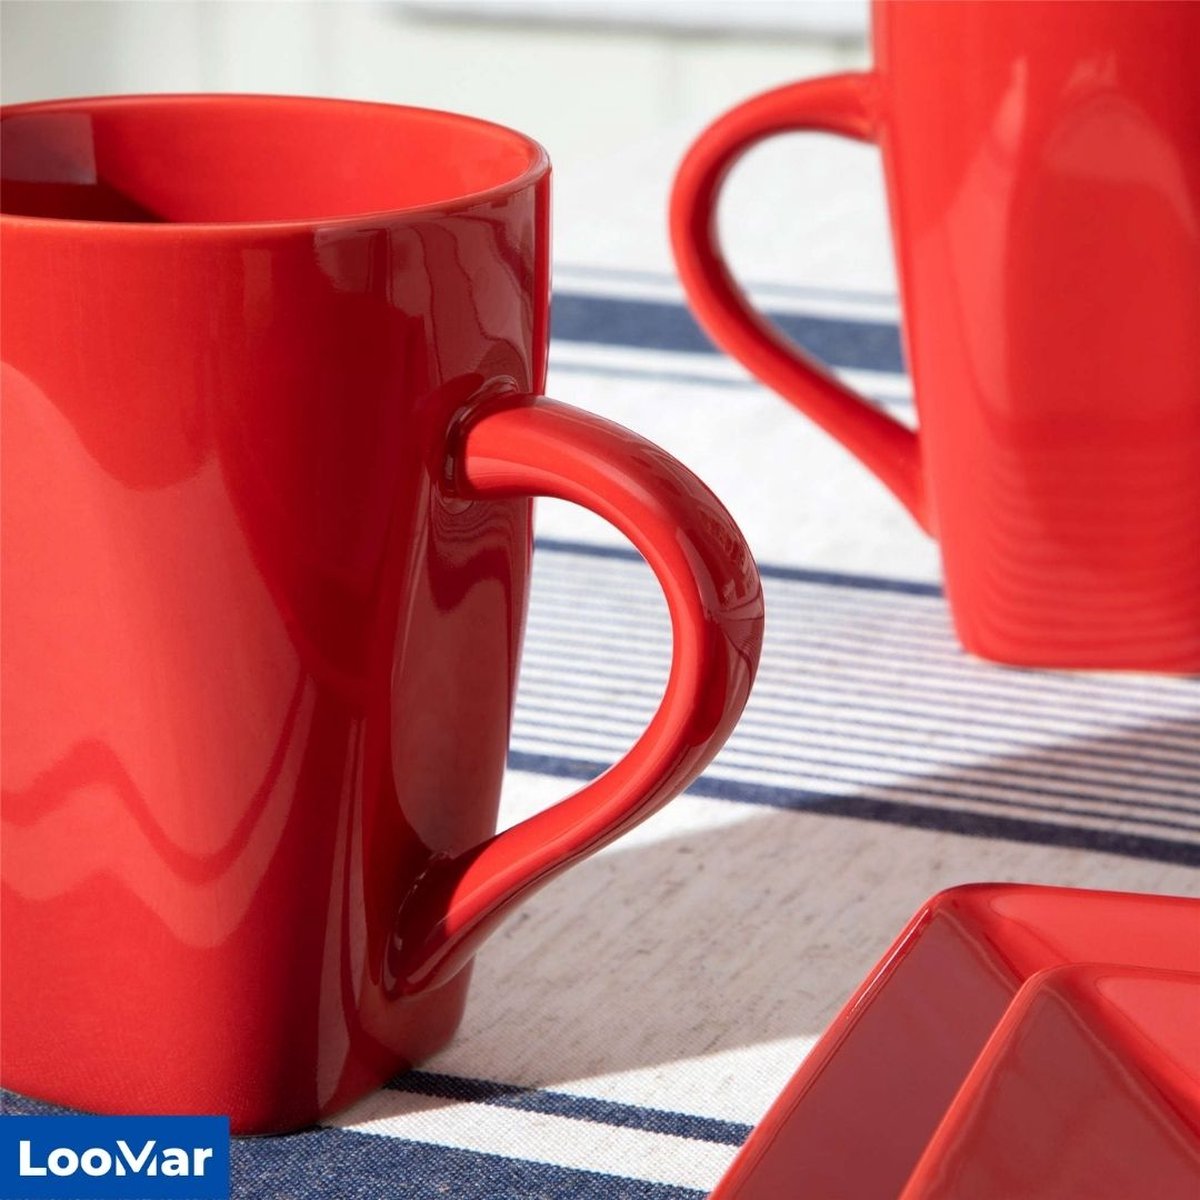 Lot de 2 tasses en céramique orange et rouge – La Benne Idée